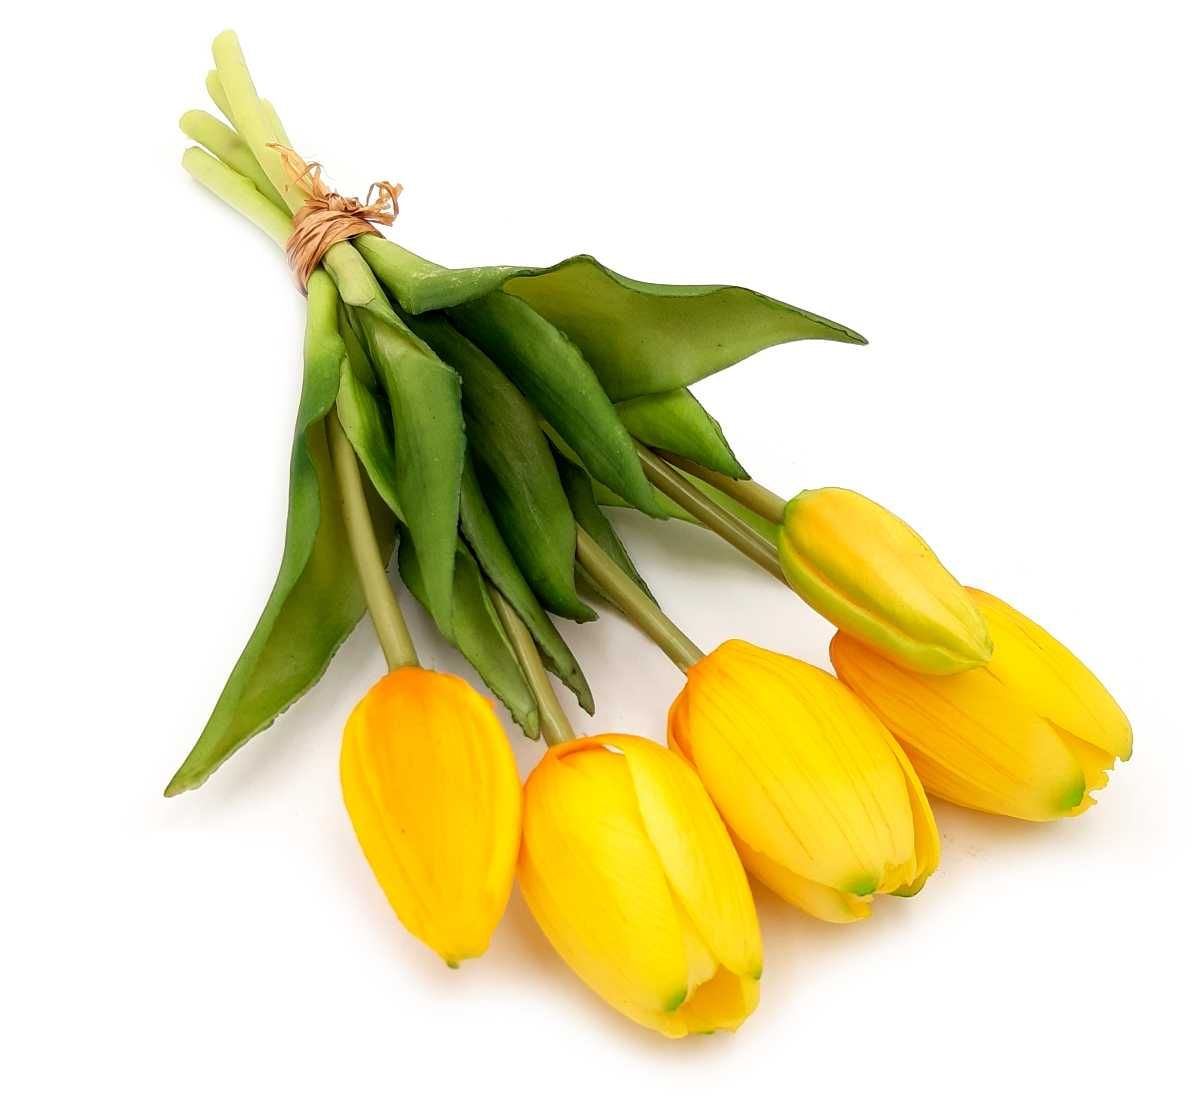 Tulipan sztuczny tulipany silikonowe bukiet 5 sztuk ŻÓŁTY POMARAŃCZOWY